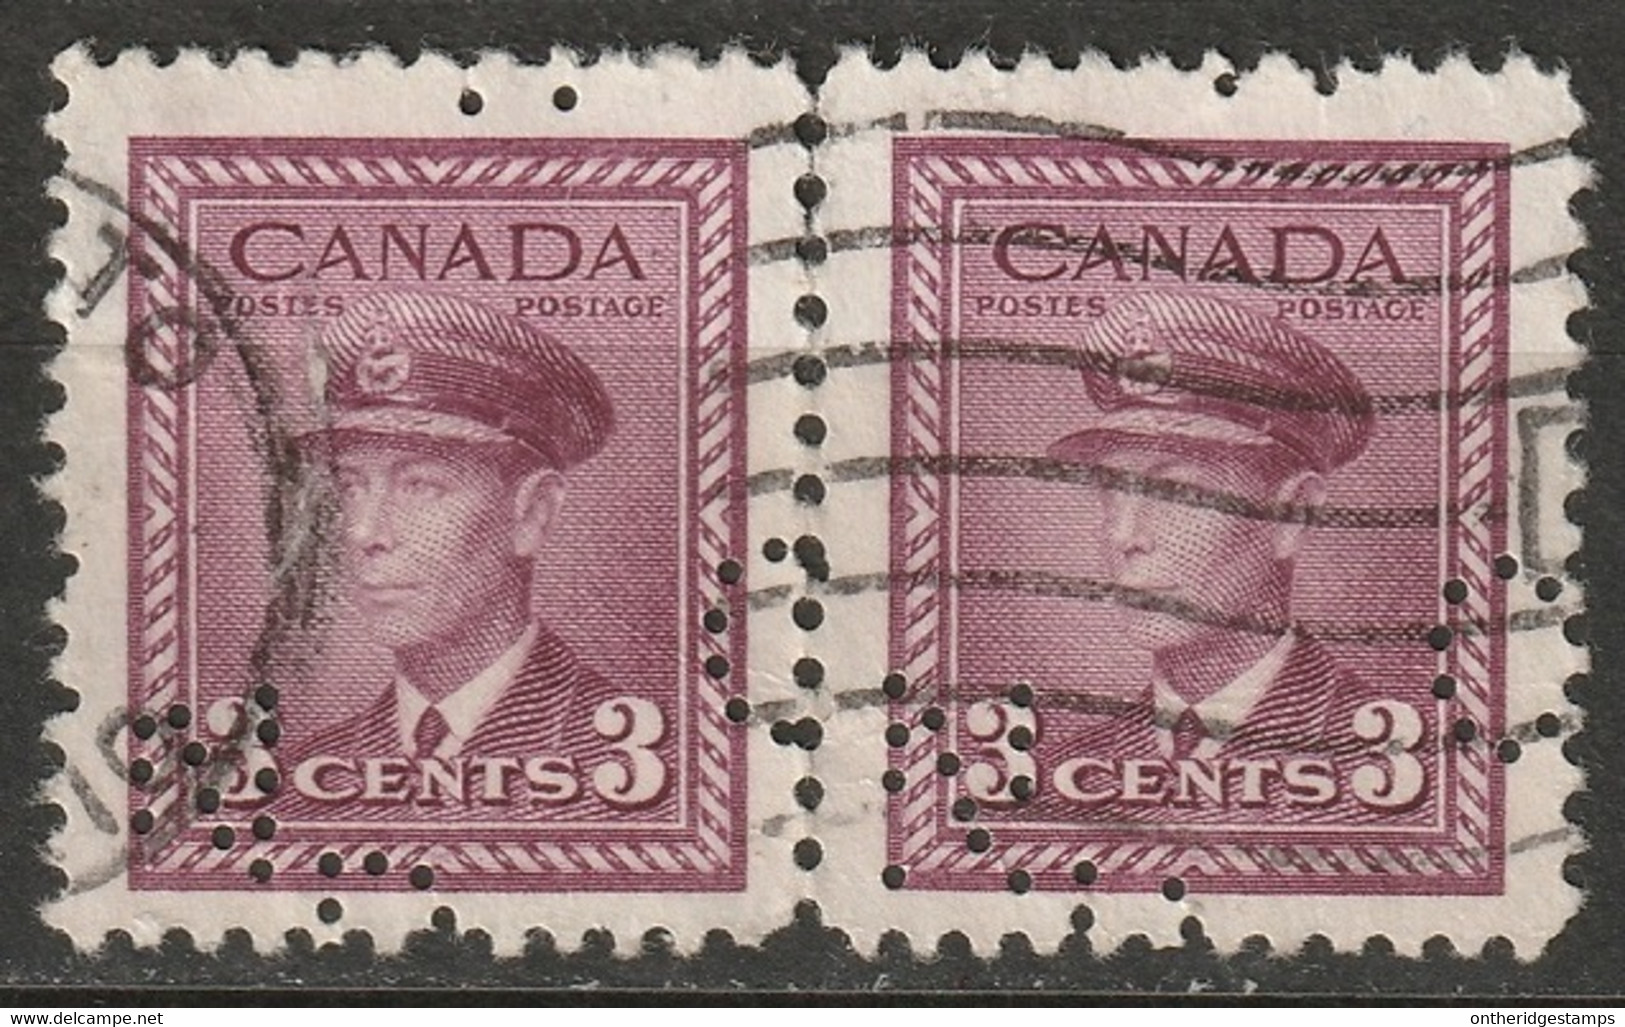 Canada 1942 Sc 252  Pair Used "CNR" (CN Rail) Perfin - Perfins